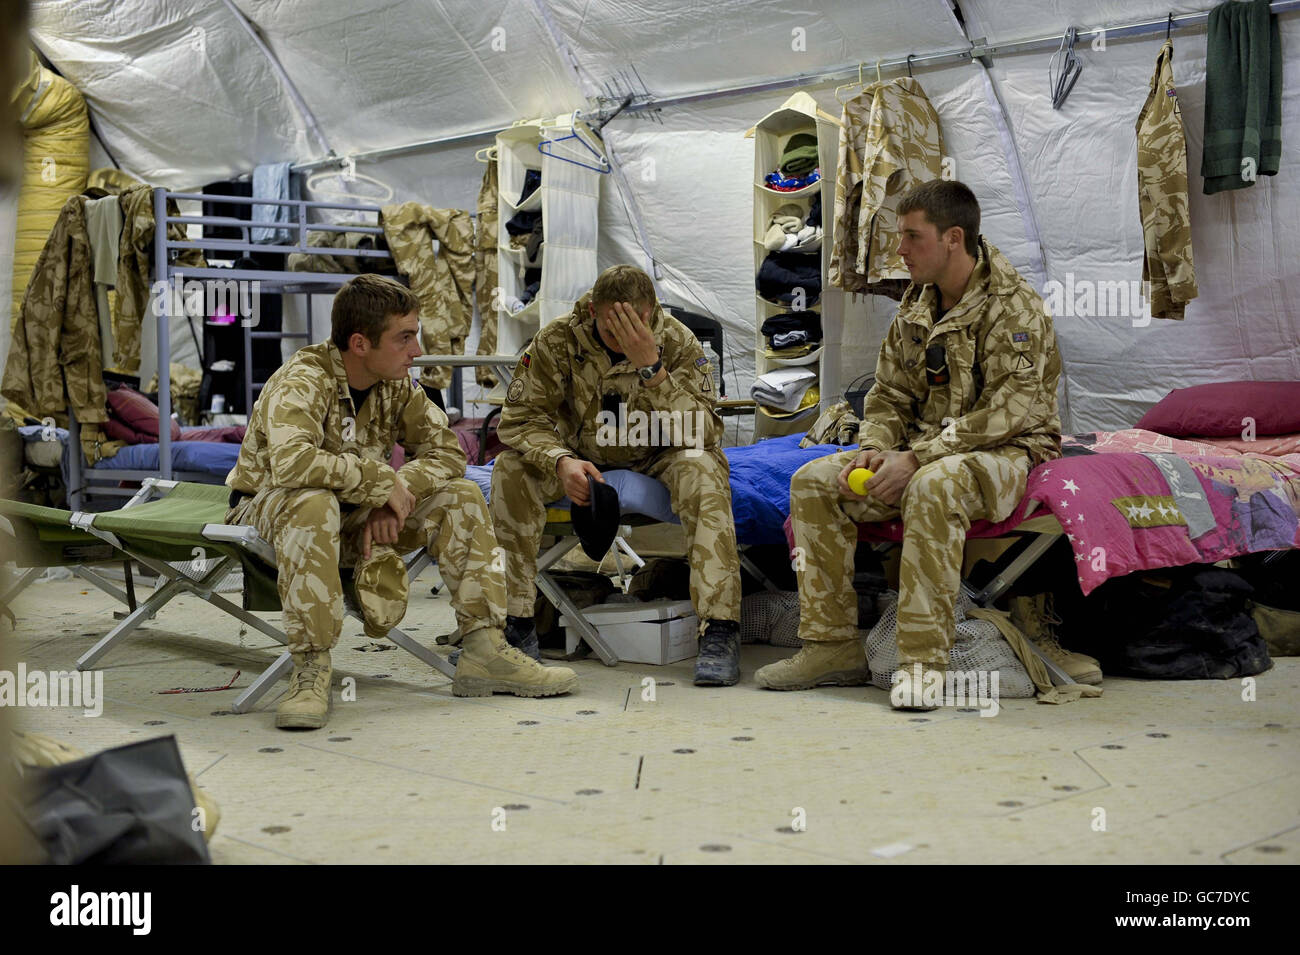 Les soldats du 2e Régiment de chars royal se détendent dans un lieu de transit alors qu'ils se préparent à quitter le Camp Bastion dans la province de Helmand, en Afghanistan, après une visite éprouvante de six mois. Banque D'Images